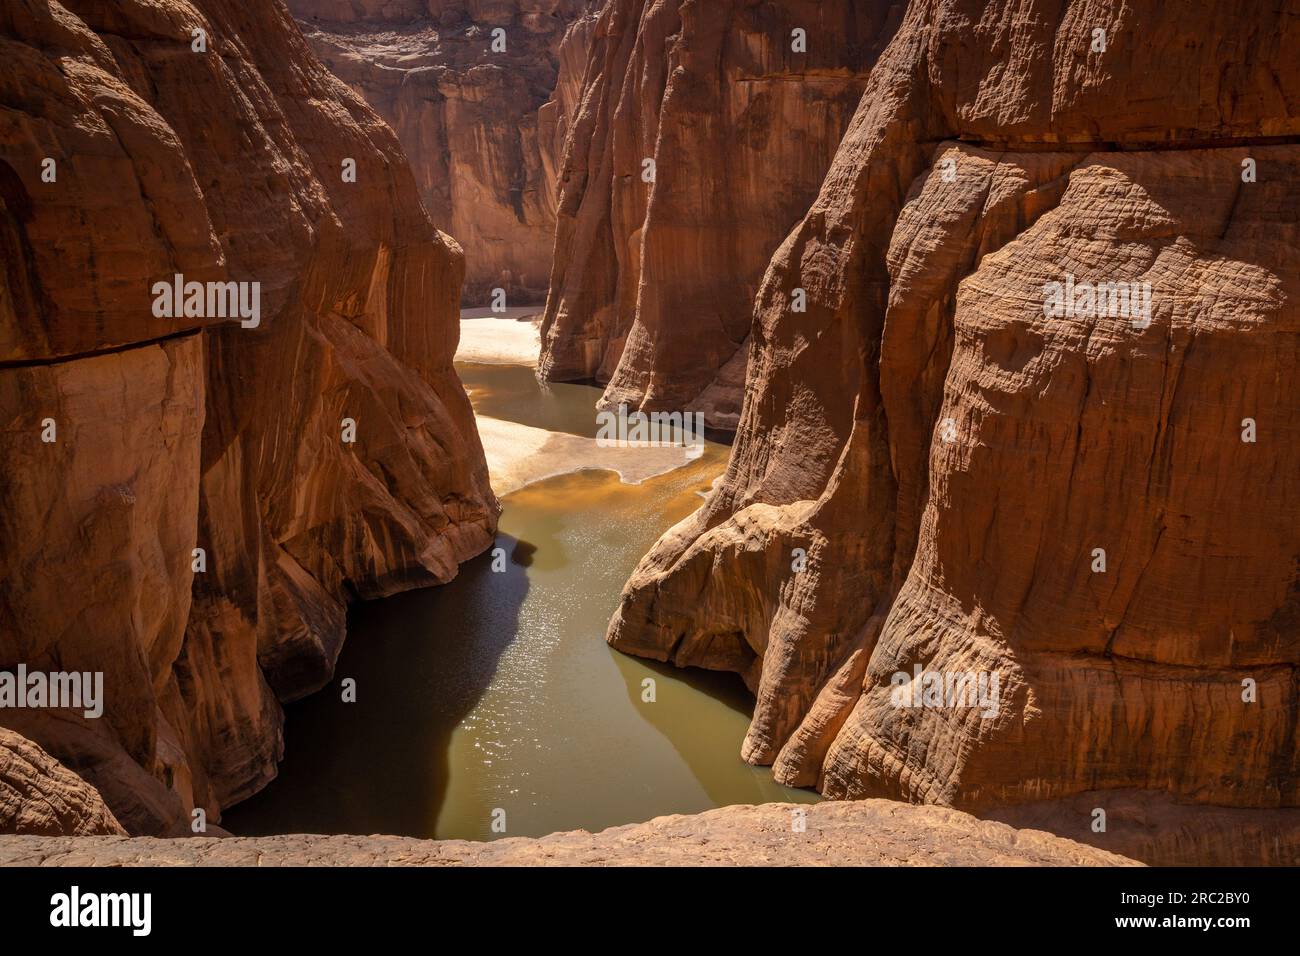 Affacciato sulla Guelta d'Archei, il terreno ondulato richiama i racconti di un'antica evoluzione geologica. Vista elevata. Foto Stock